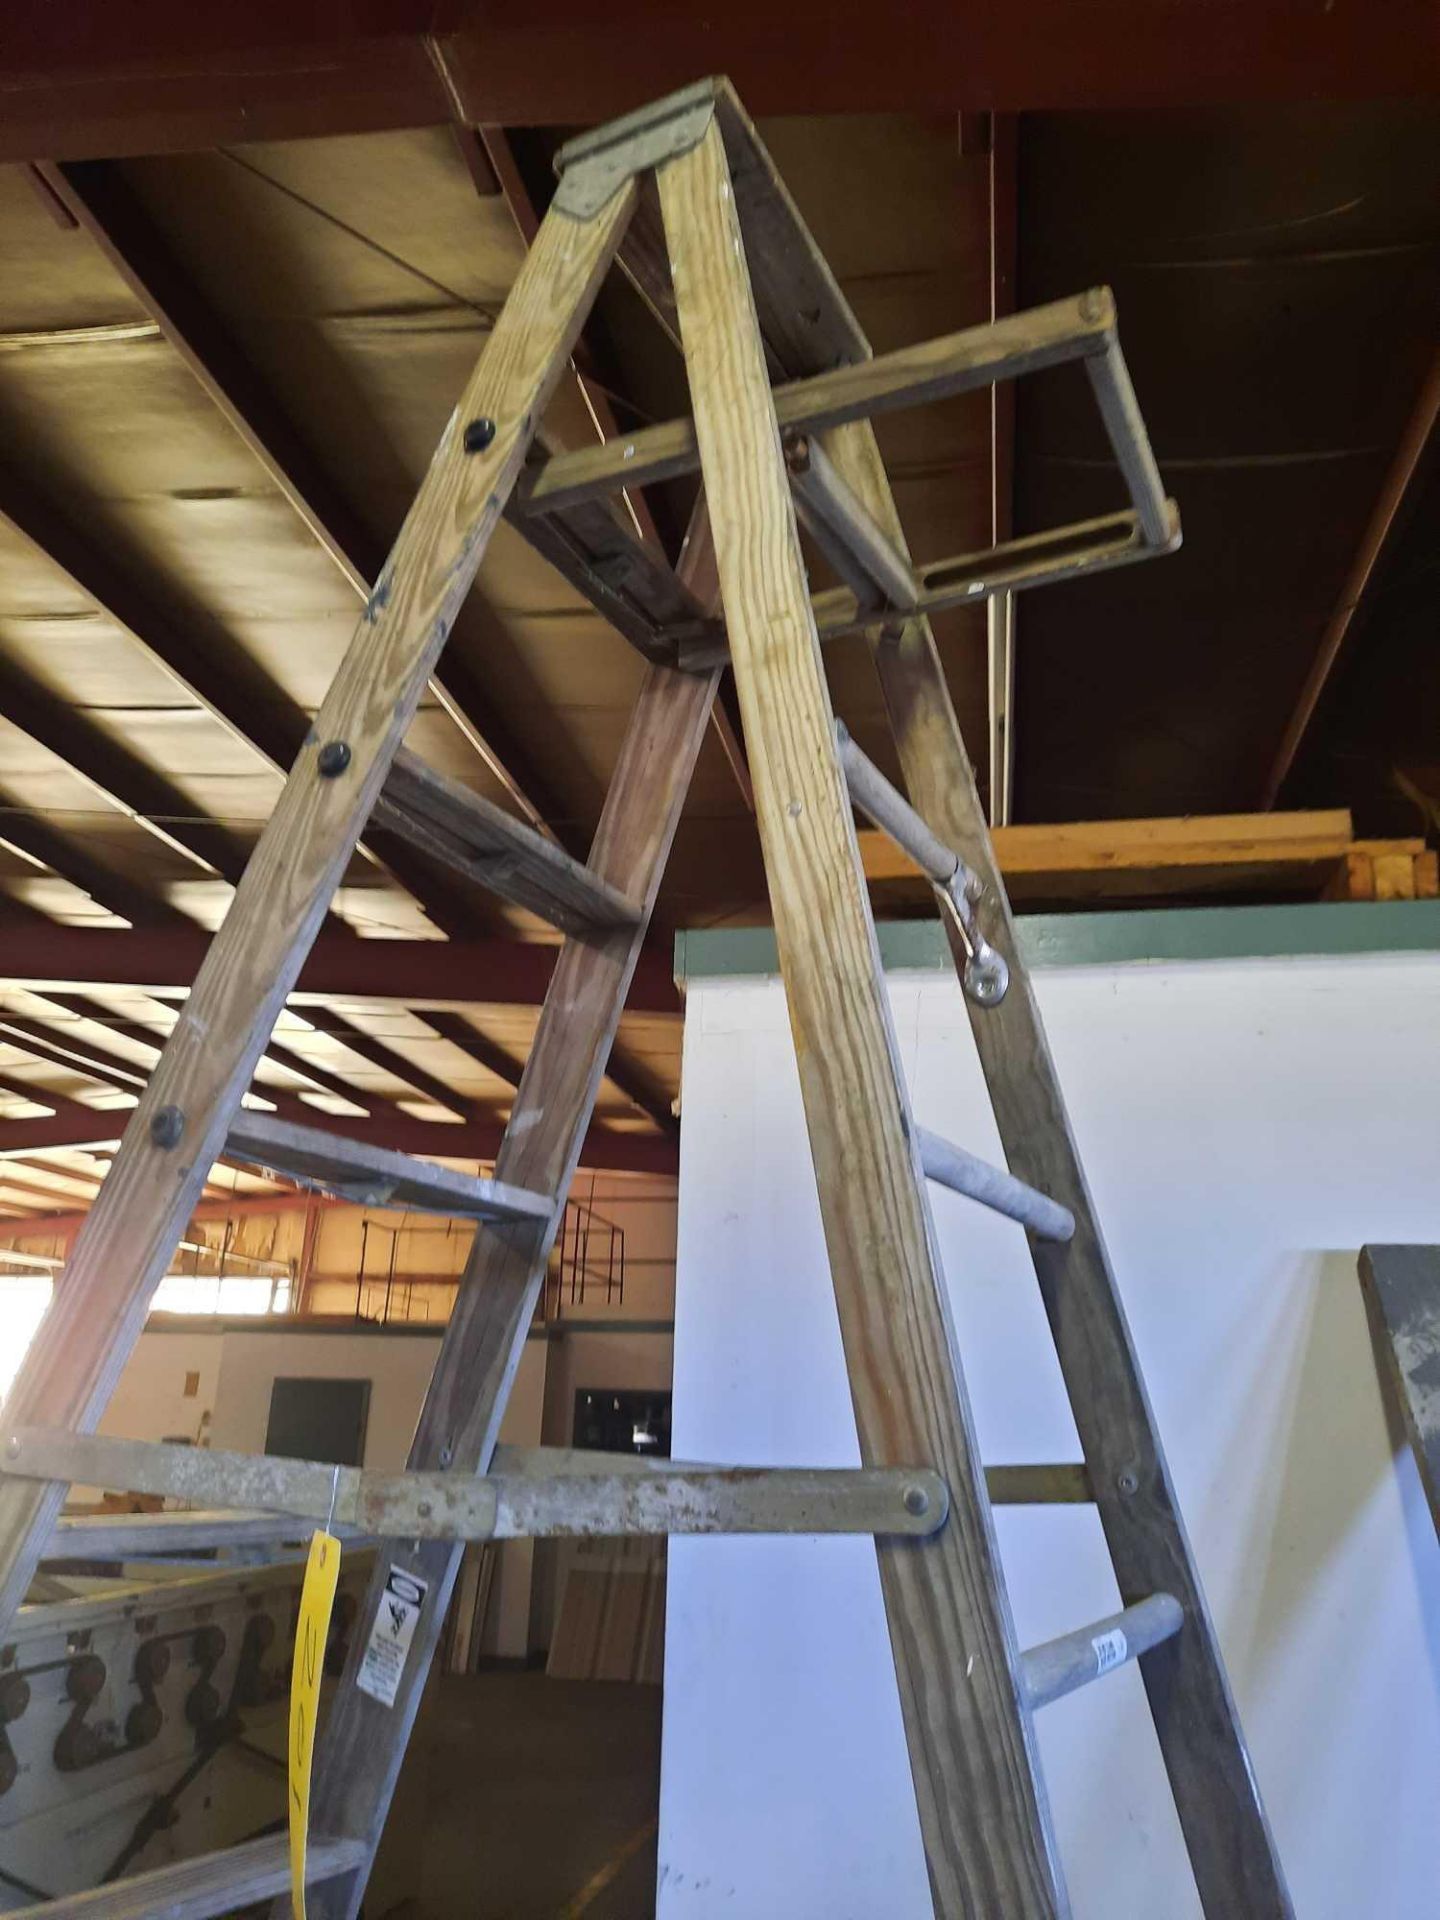 Werner 10 foot wood folding ladder, model W3710S, 250lb rating - Image 2 of 3